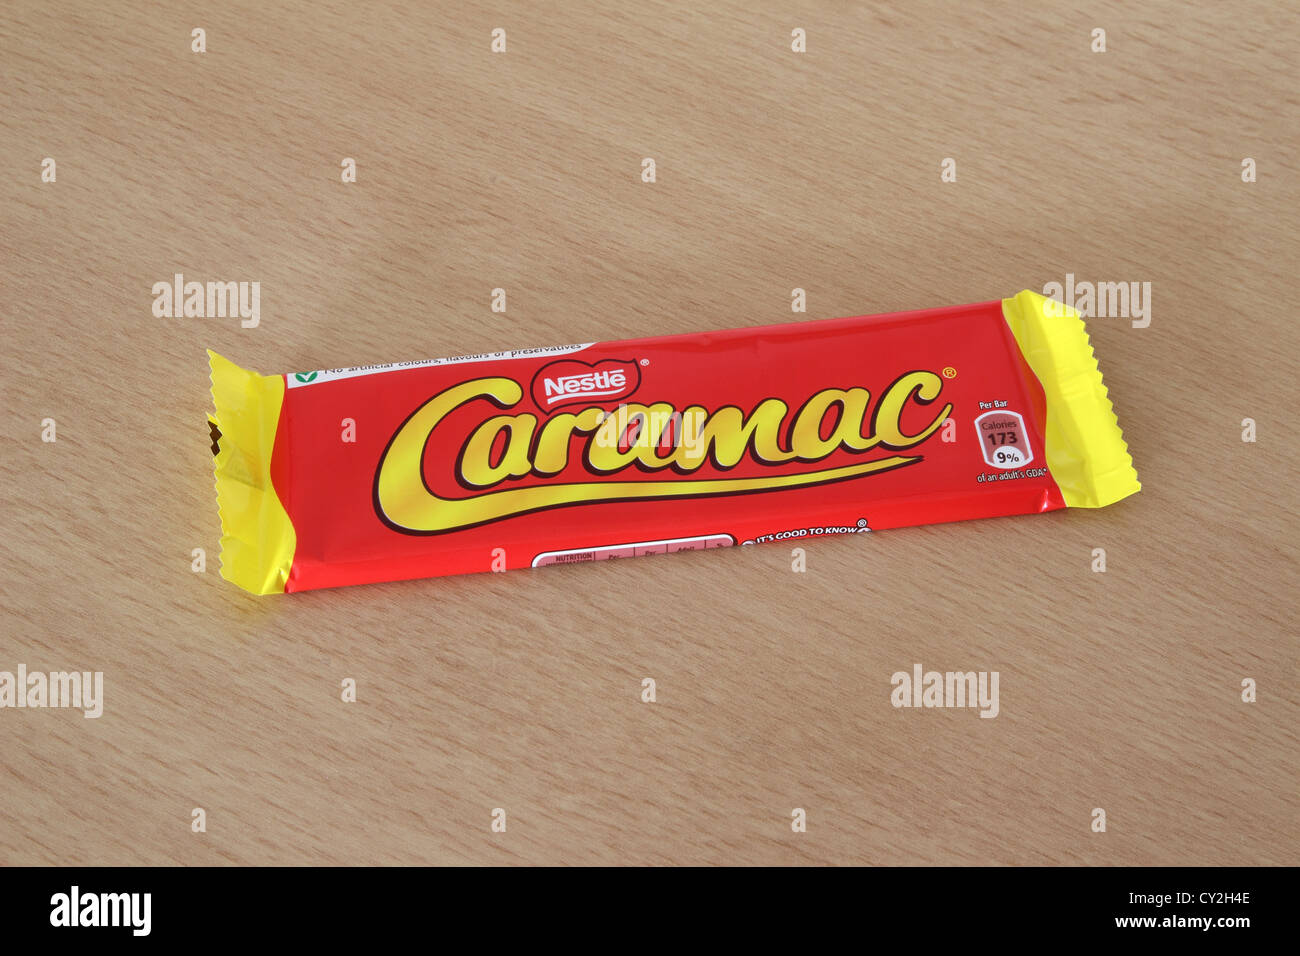 Nestle Caramac Confectionery Bar Stock Photo